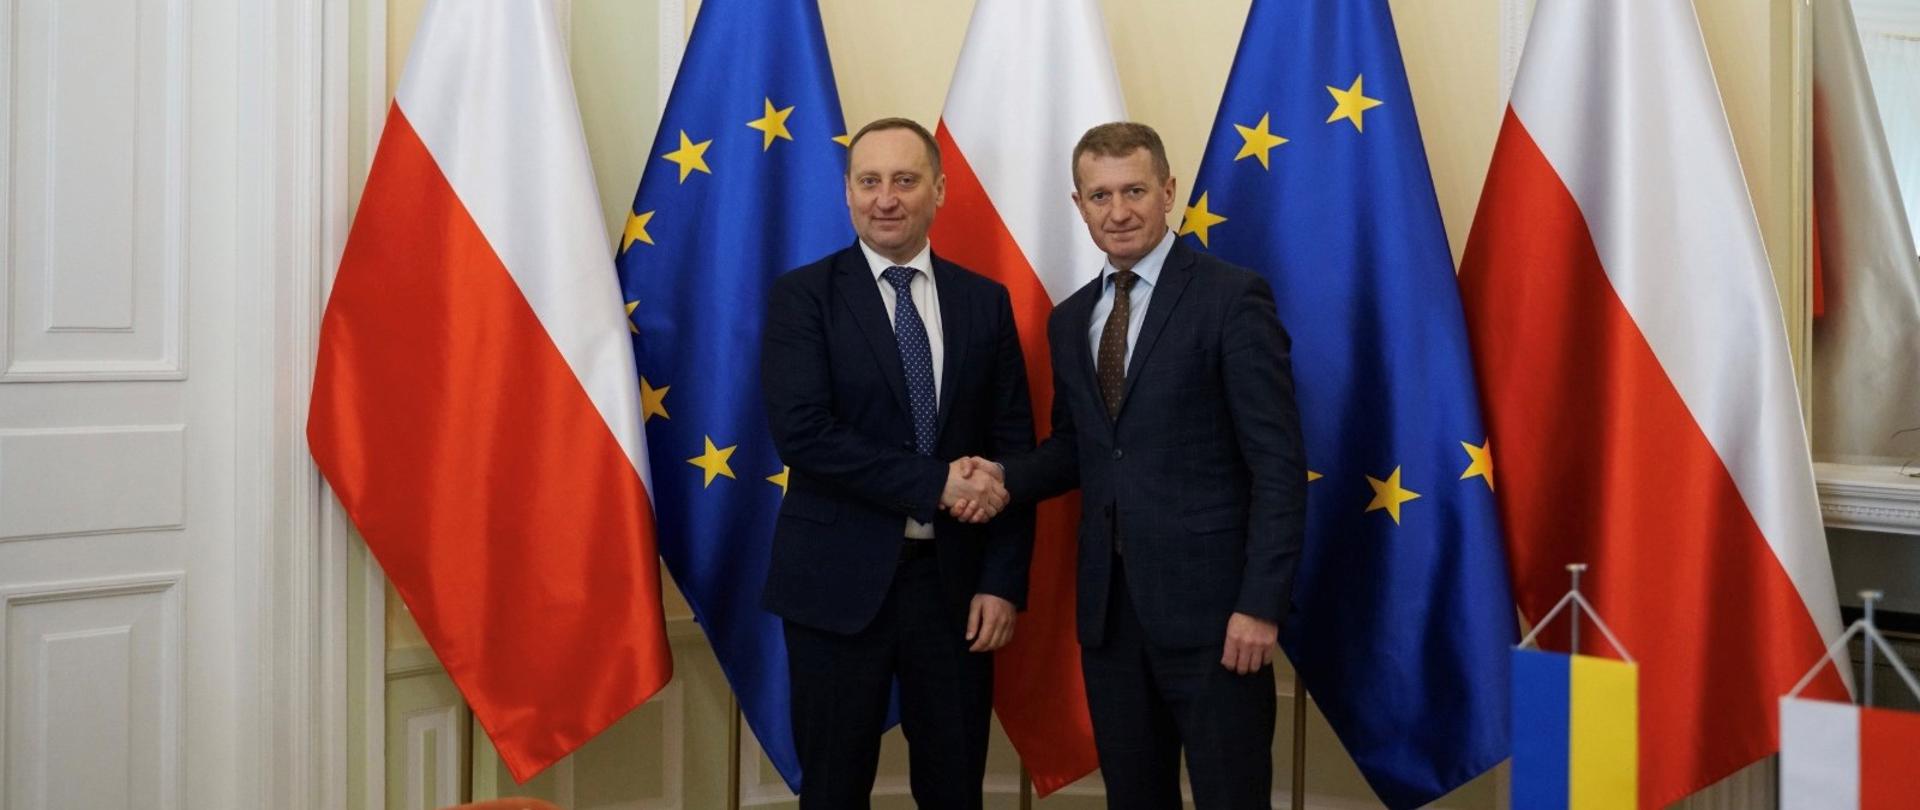 Wiceminister Ireneusz Raś oraz wiceminister ds. sportu Ukrainy Andrij Czesnokow podają sobie ręce. W tle flagi Polski i Unii Europejskiej.